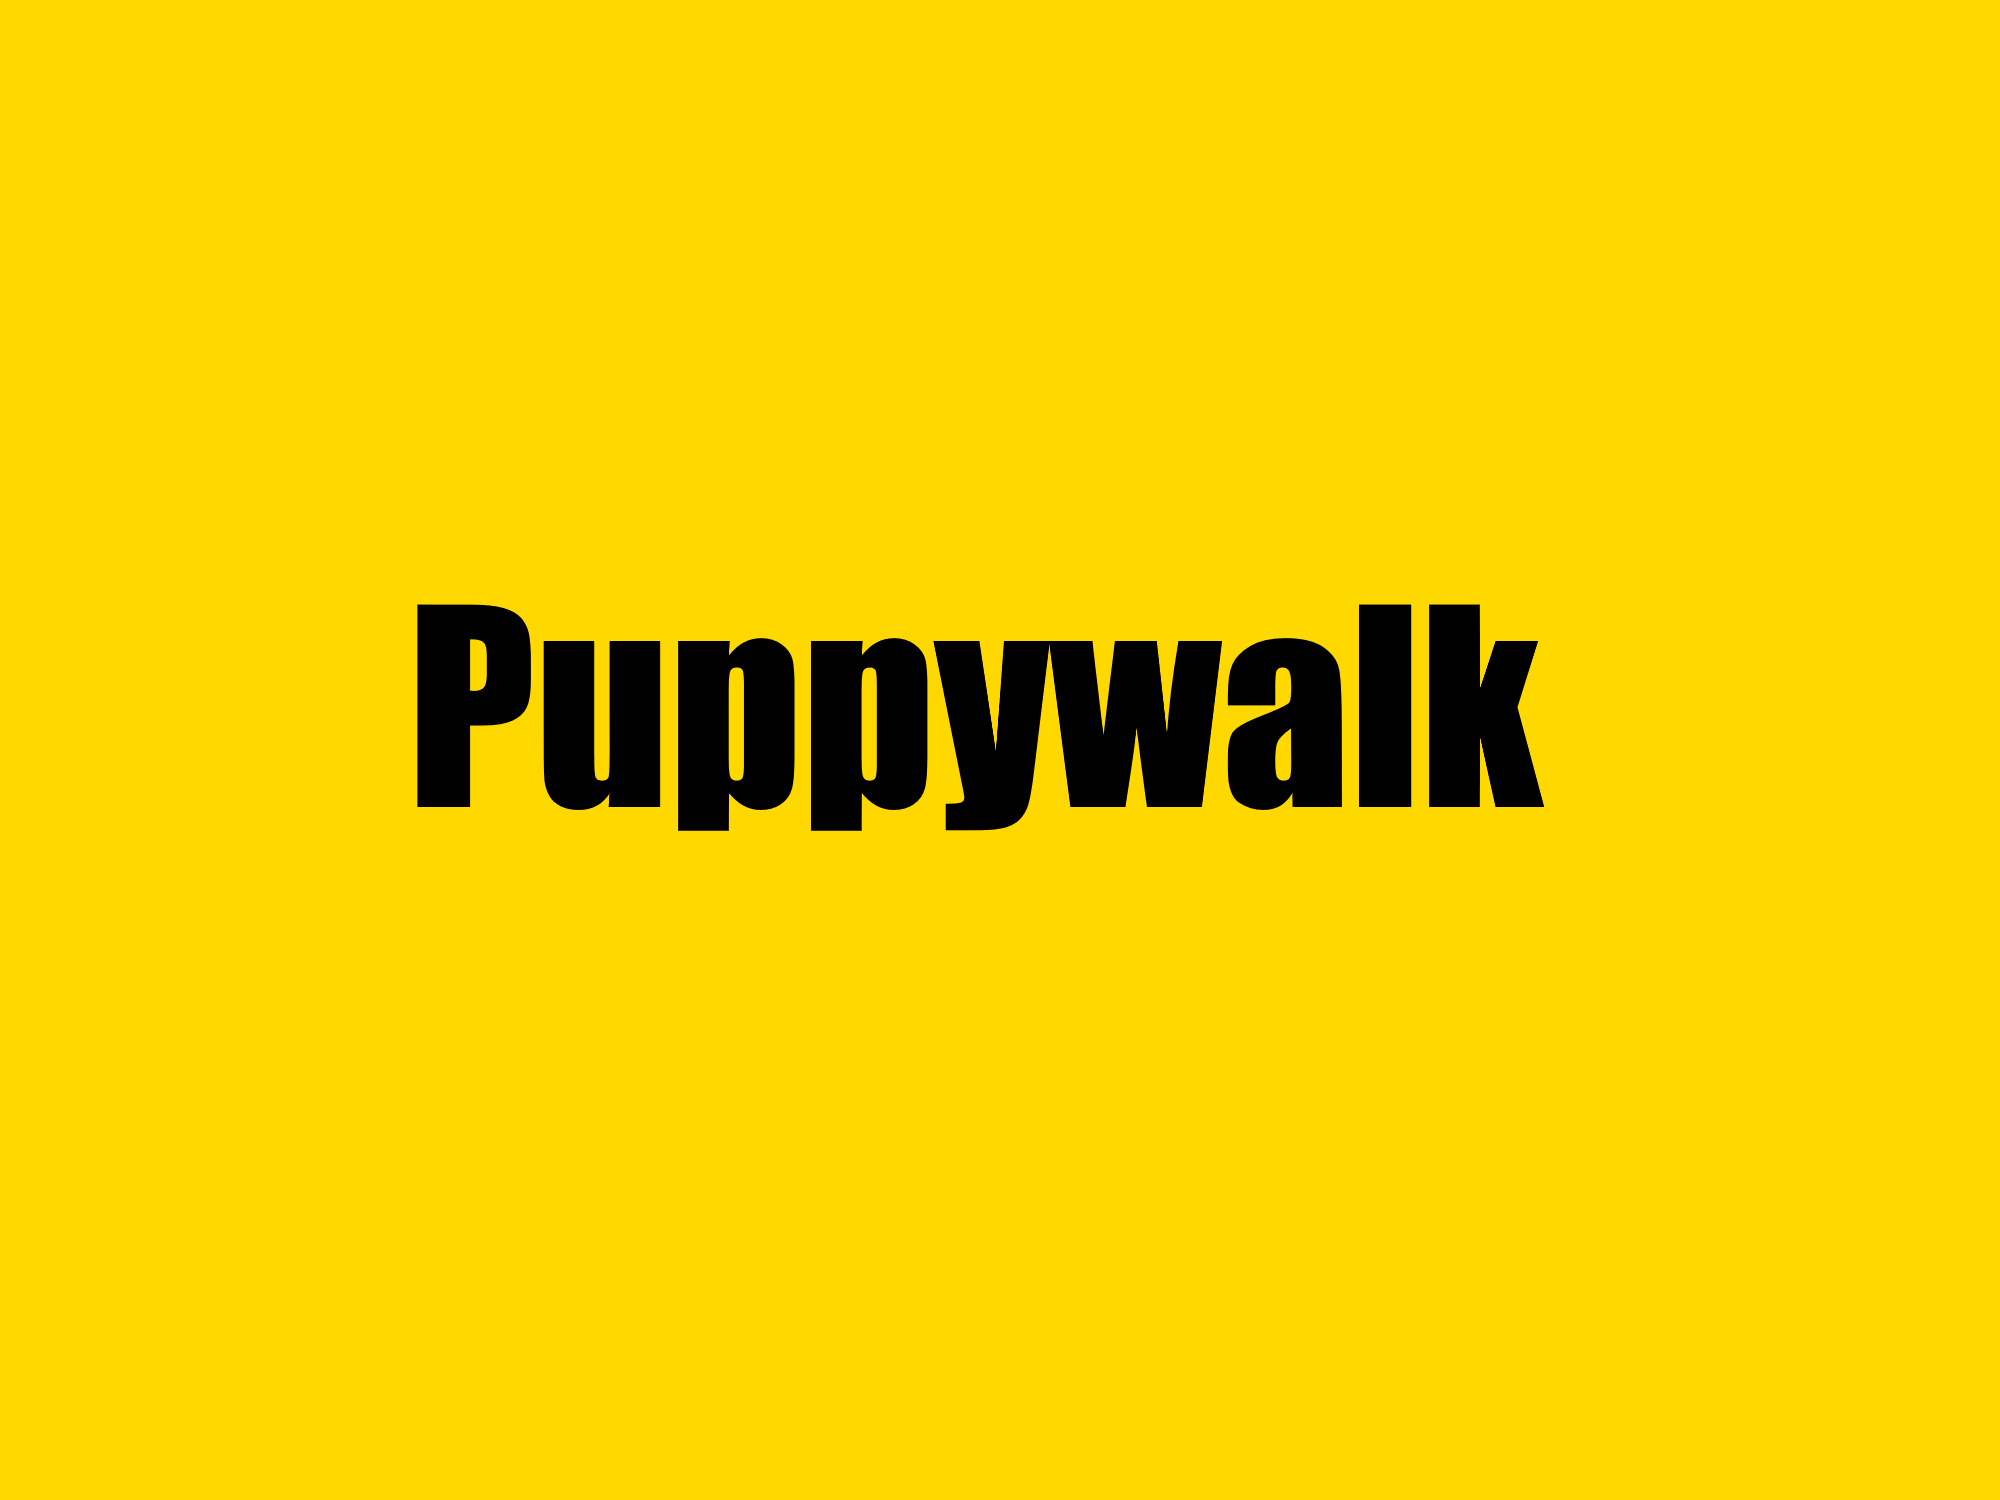 Puppywalk